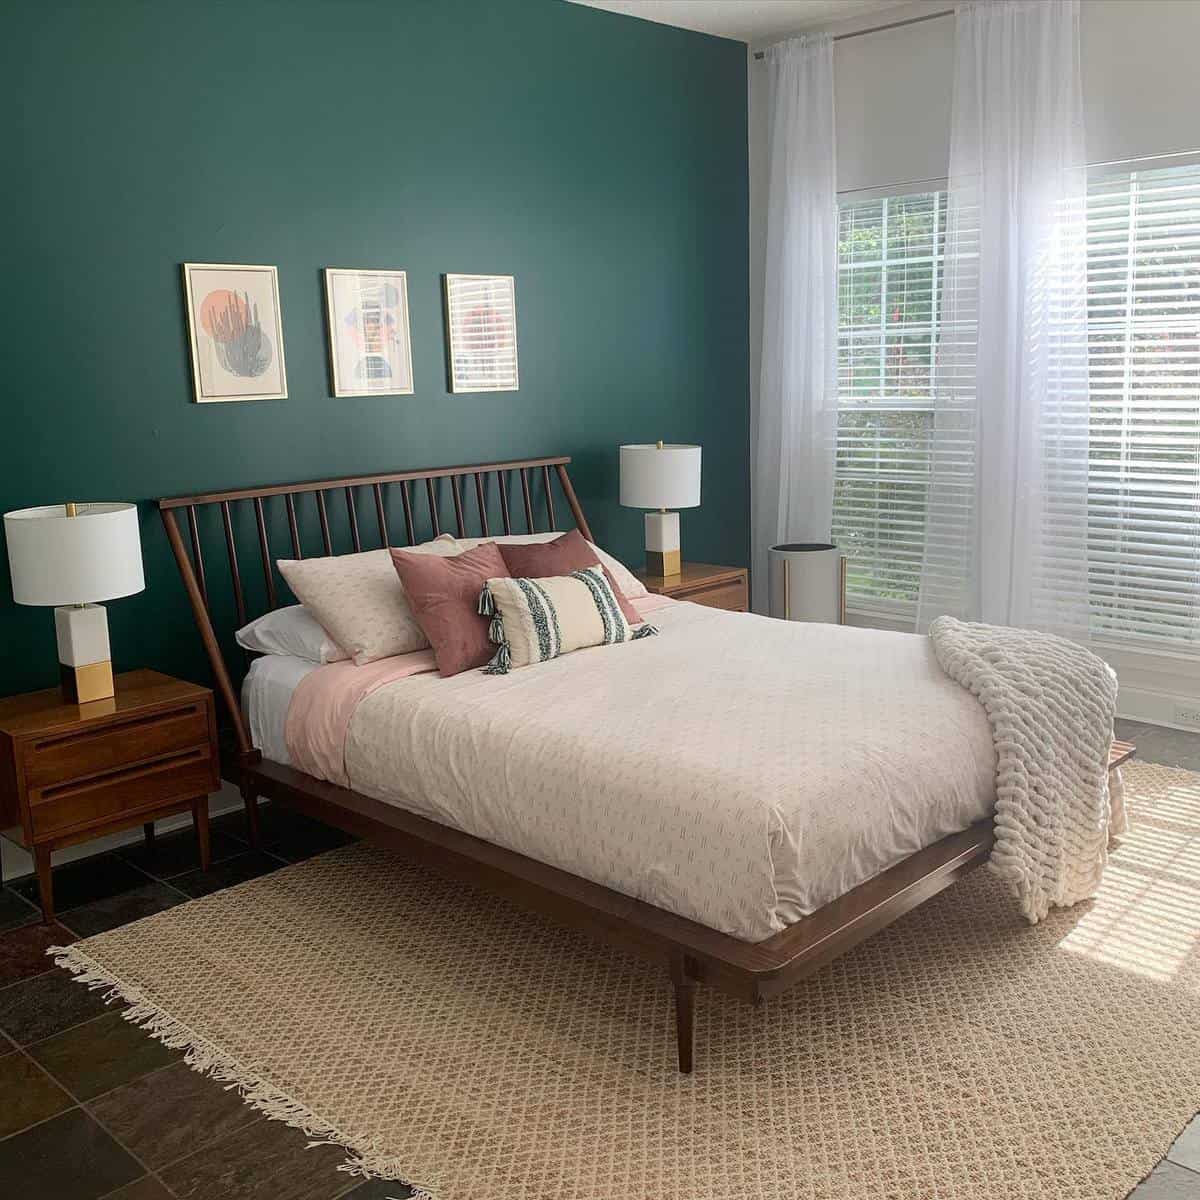 Green slate tile tapestry, wooden bed frame, framed wall art